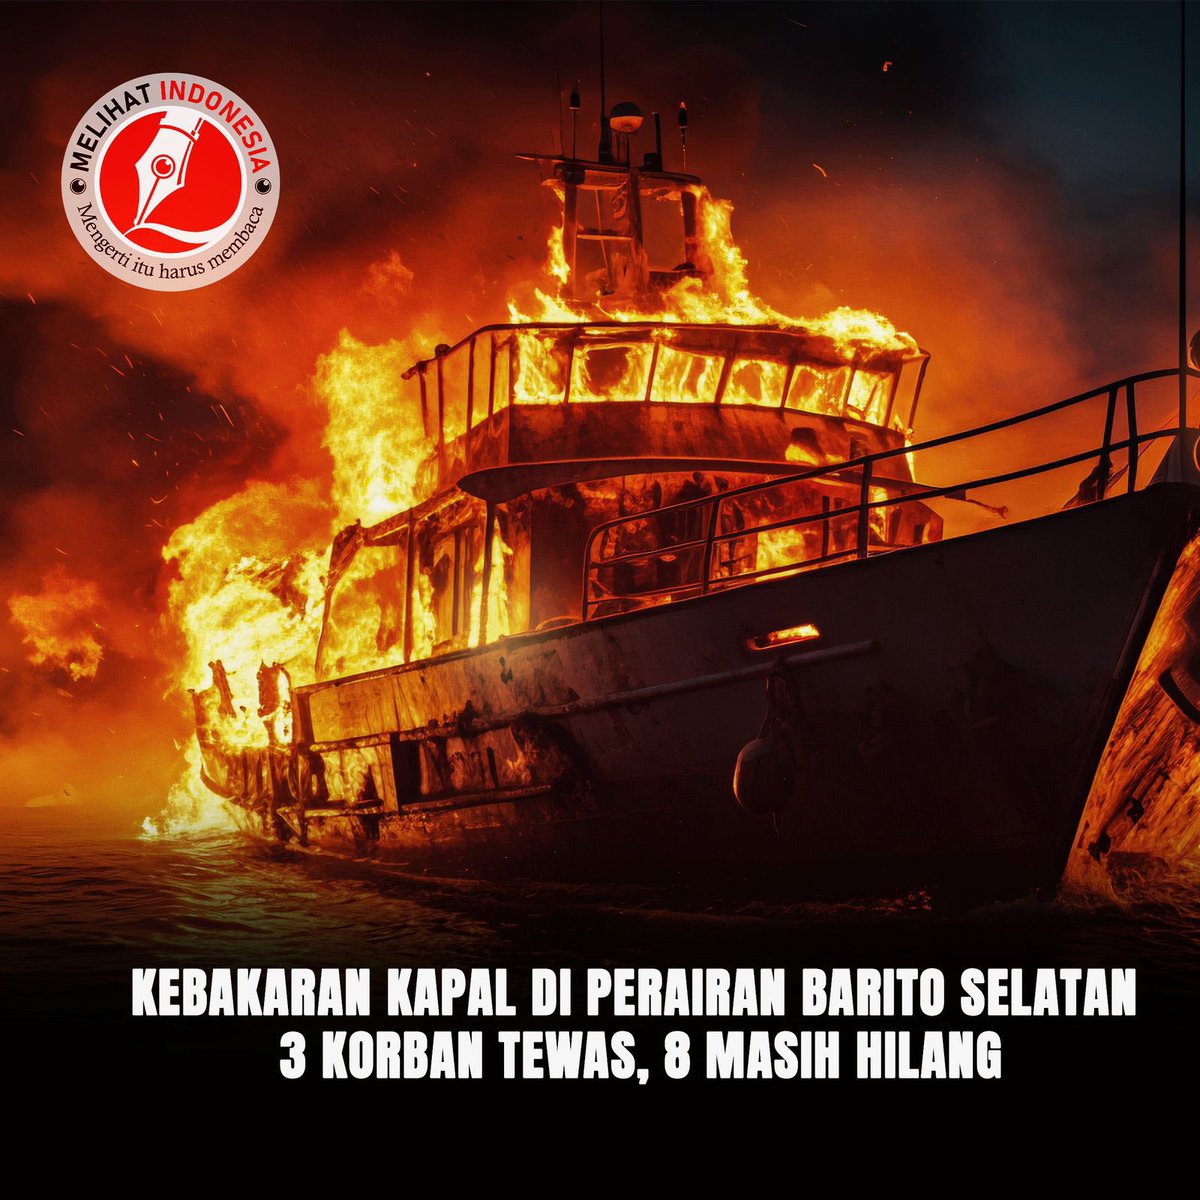 Kebakaran Kapal di Perairan Barito Selatan: 3 Korban Tewas, 8 Masih Hilang Dua kapal terbakar di Perairan Barito Selatan, Kalimantan Tengah menyebabkan tiga orang tewas dan delapan lainnya hilang. Kebakaran ini melibatkan Kapal Tugboat Surya 03 dan Kapal Dagang Surya Baru 05.